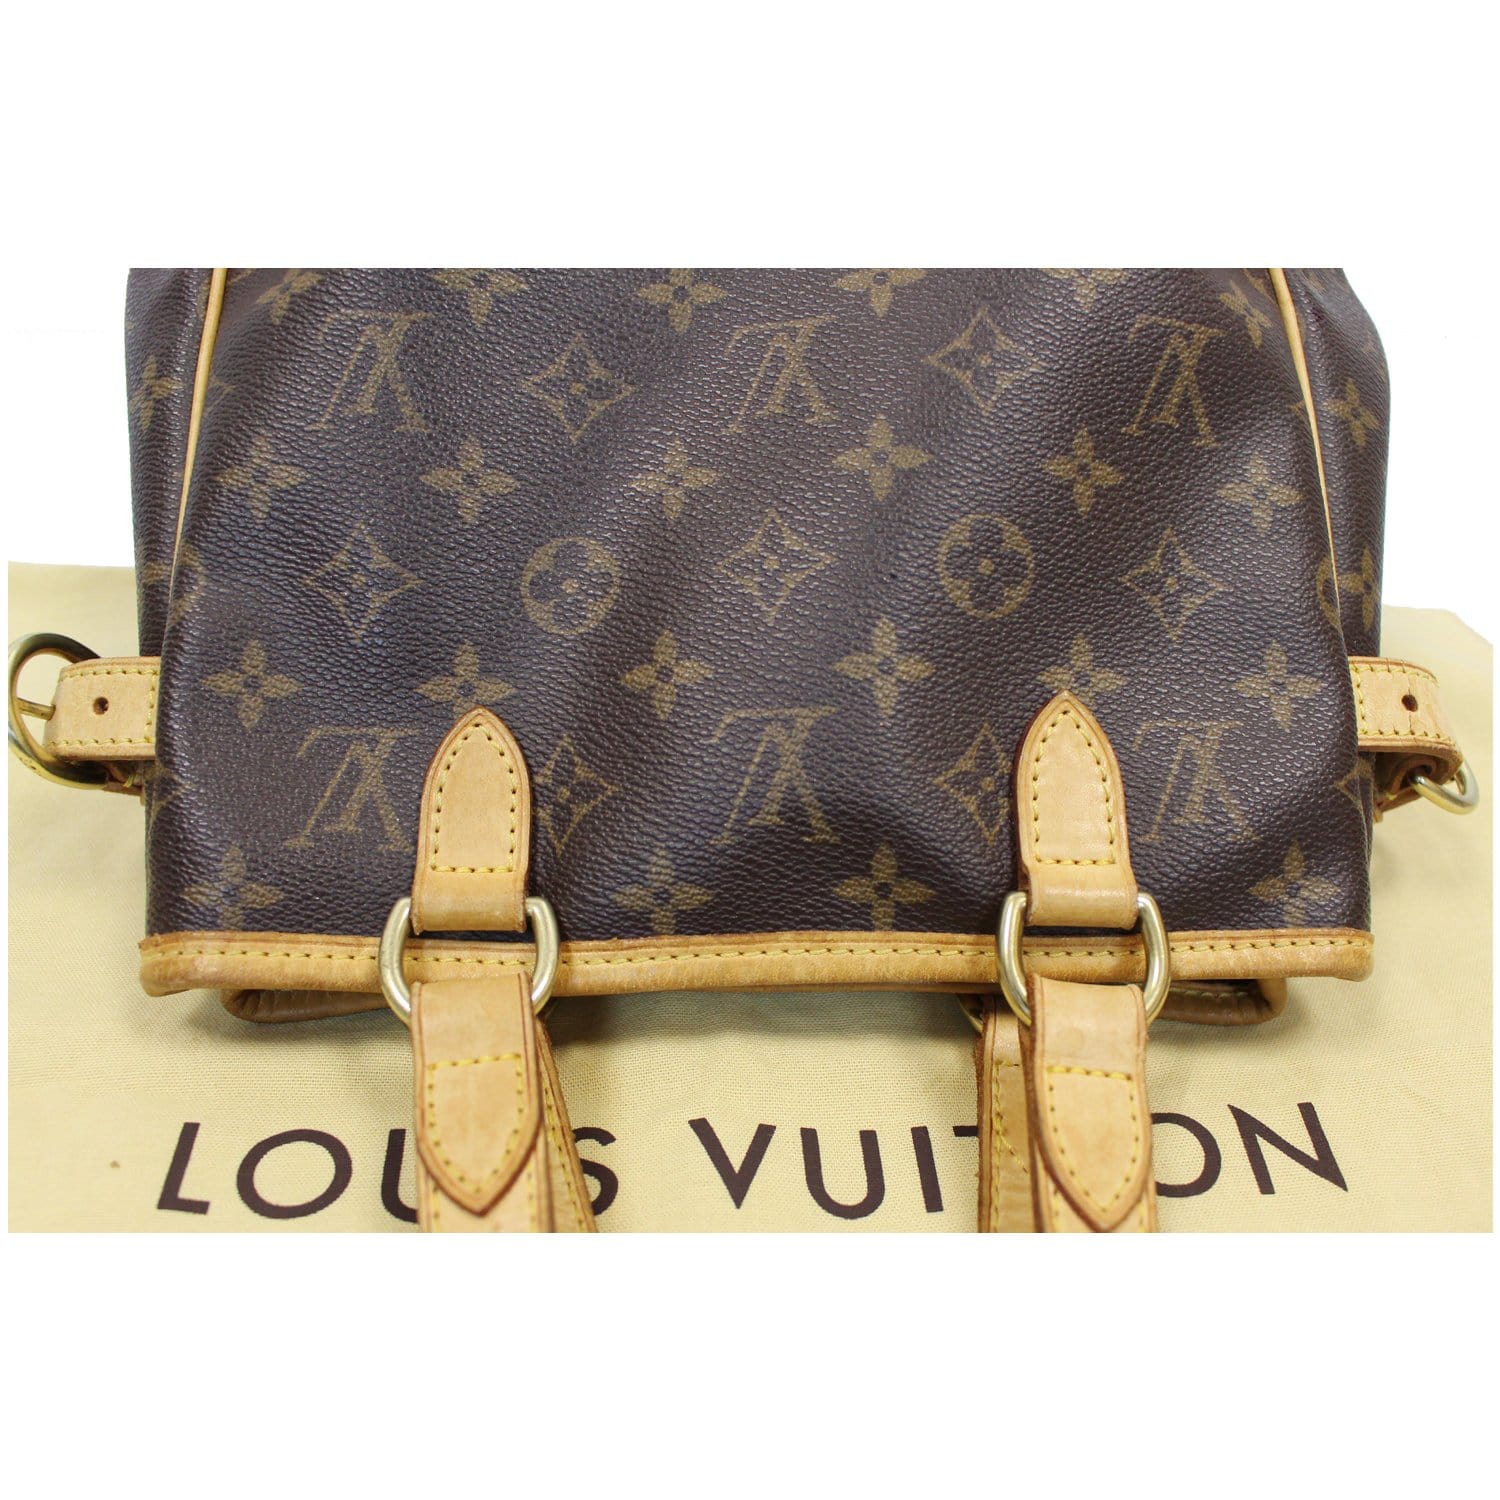 Past auction: Louis Vuitton Batignolles Vertical bag